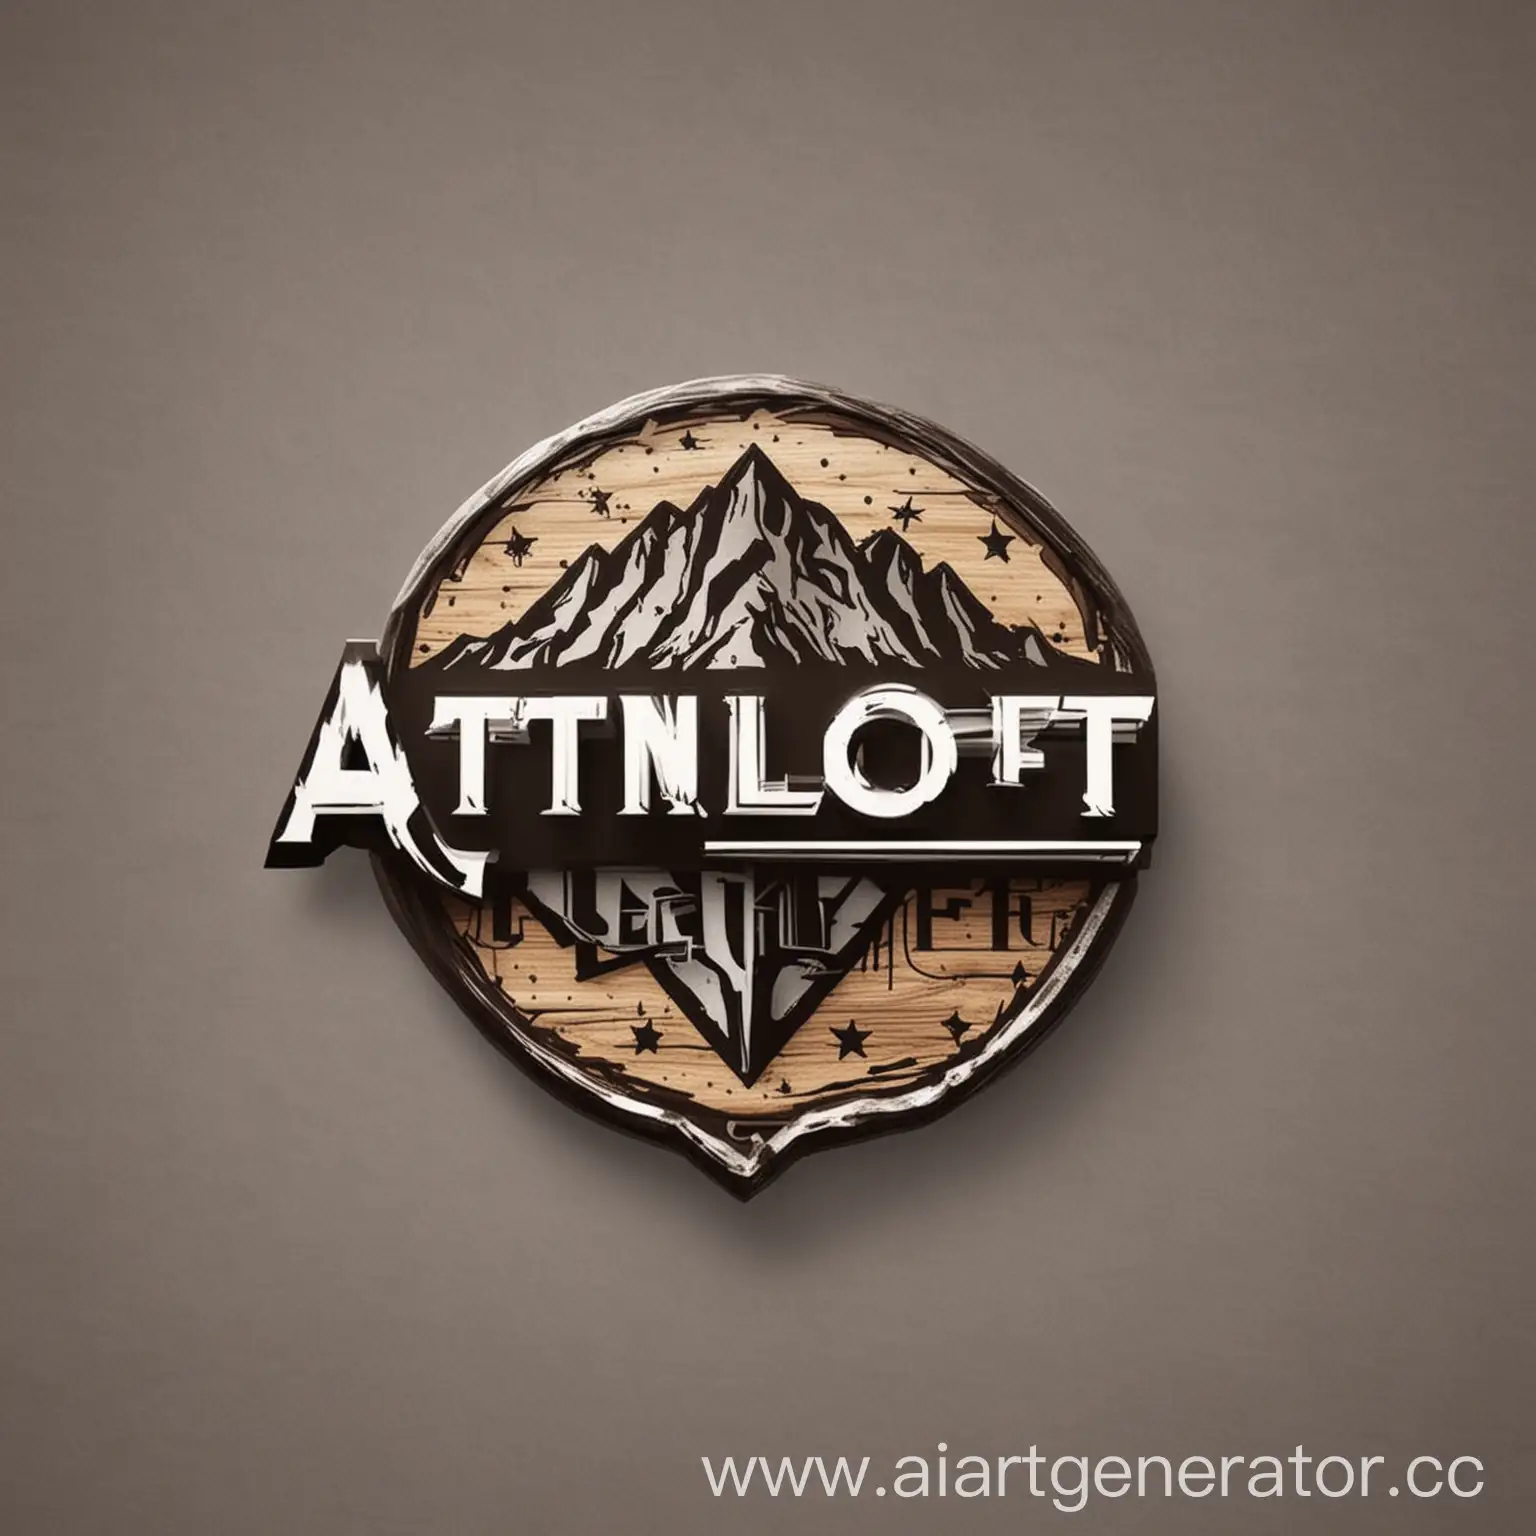 Придумай логотип для фирмы по продаже лофтовой мебели с названием AtonLoft